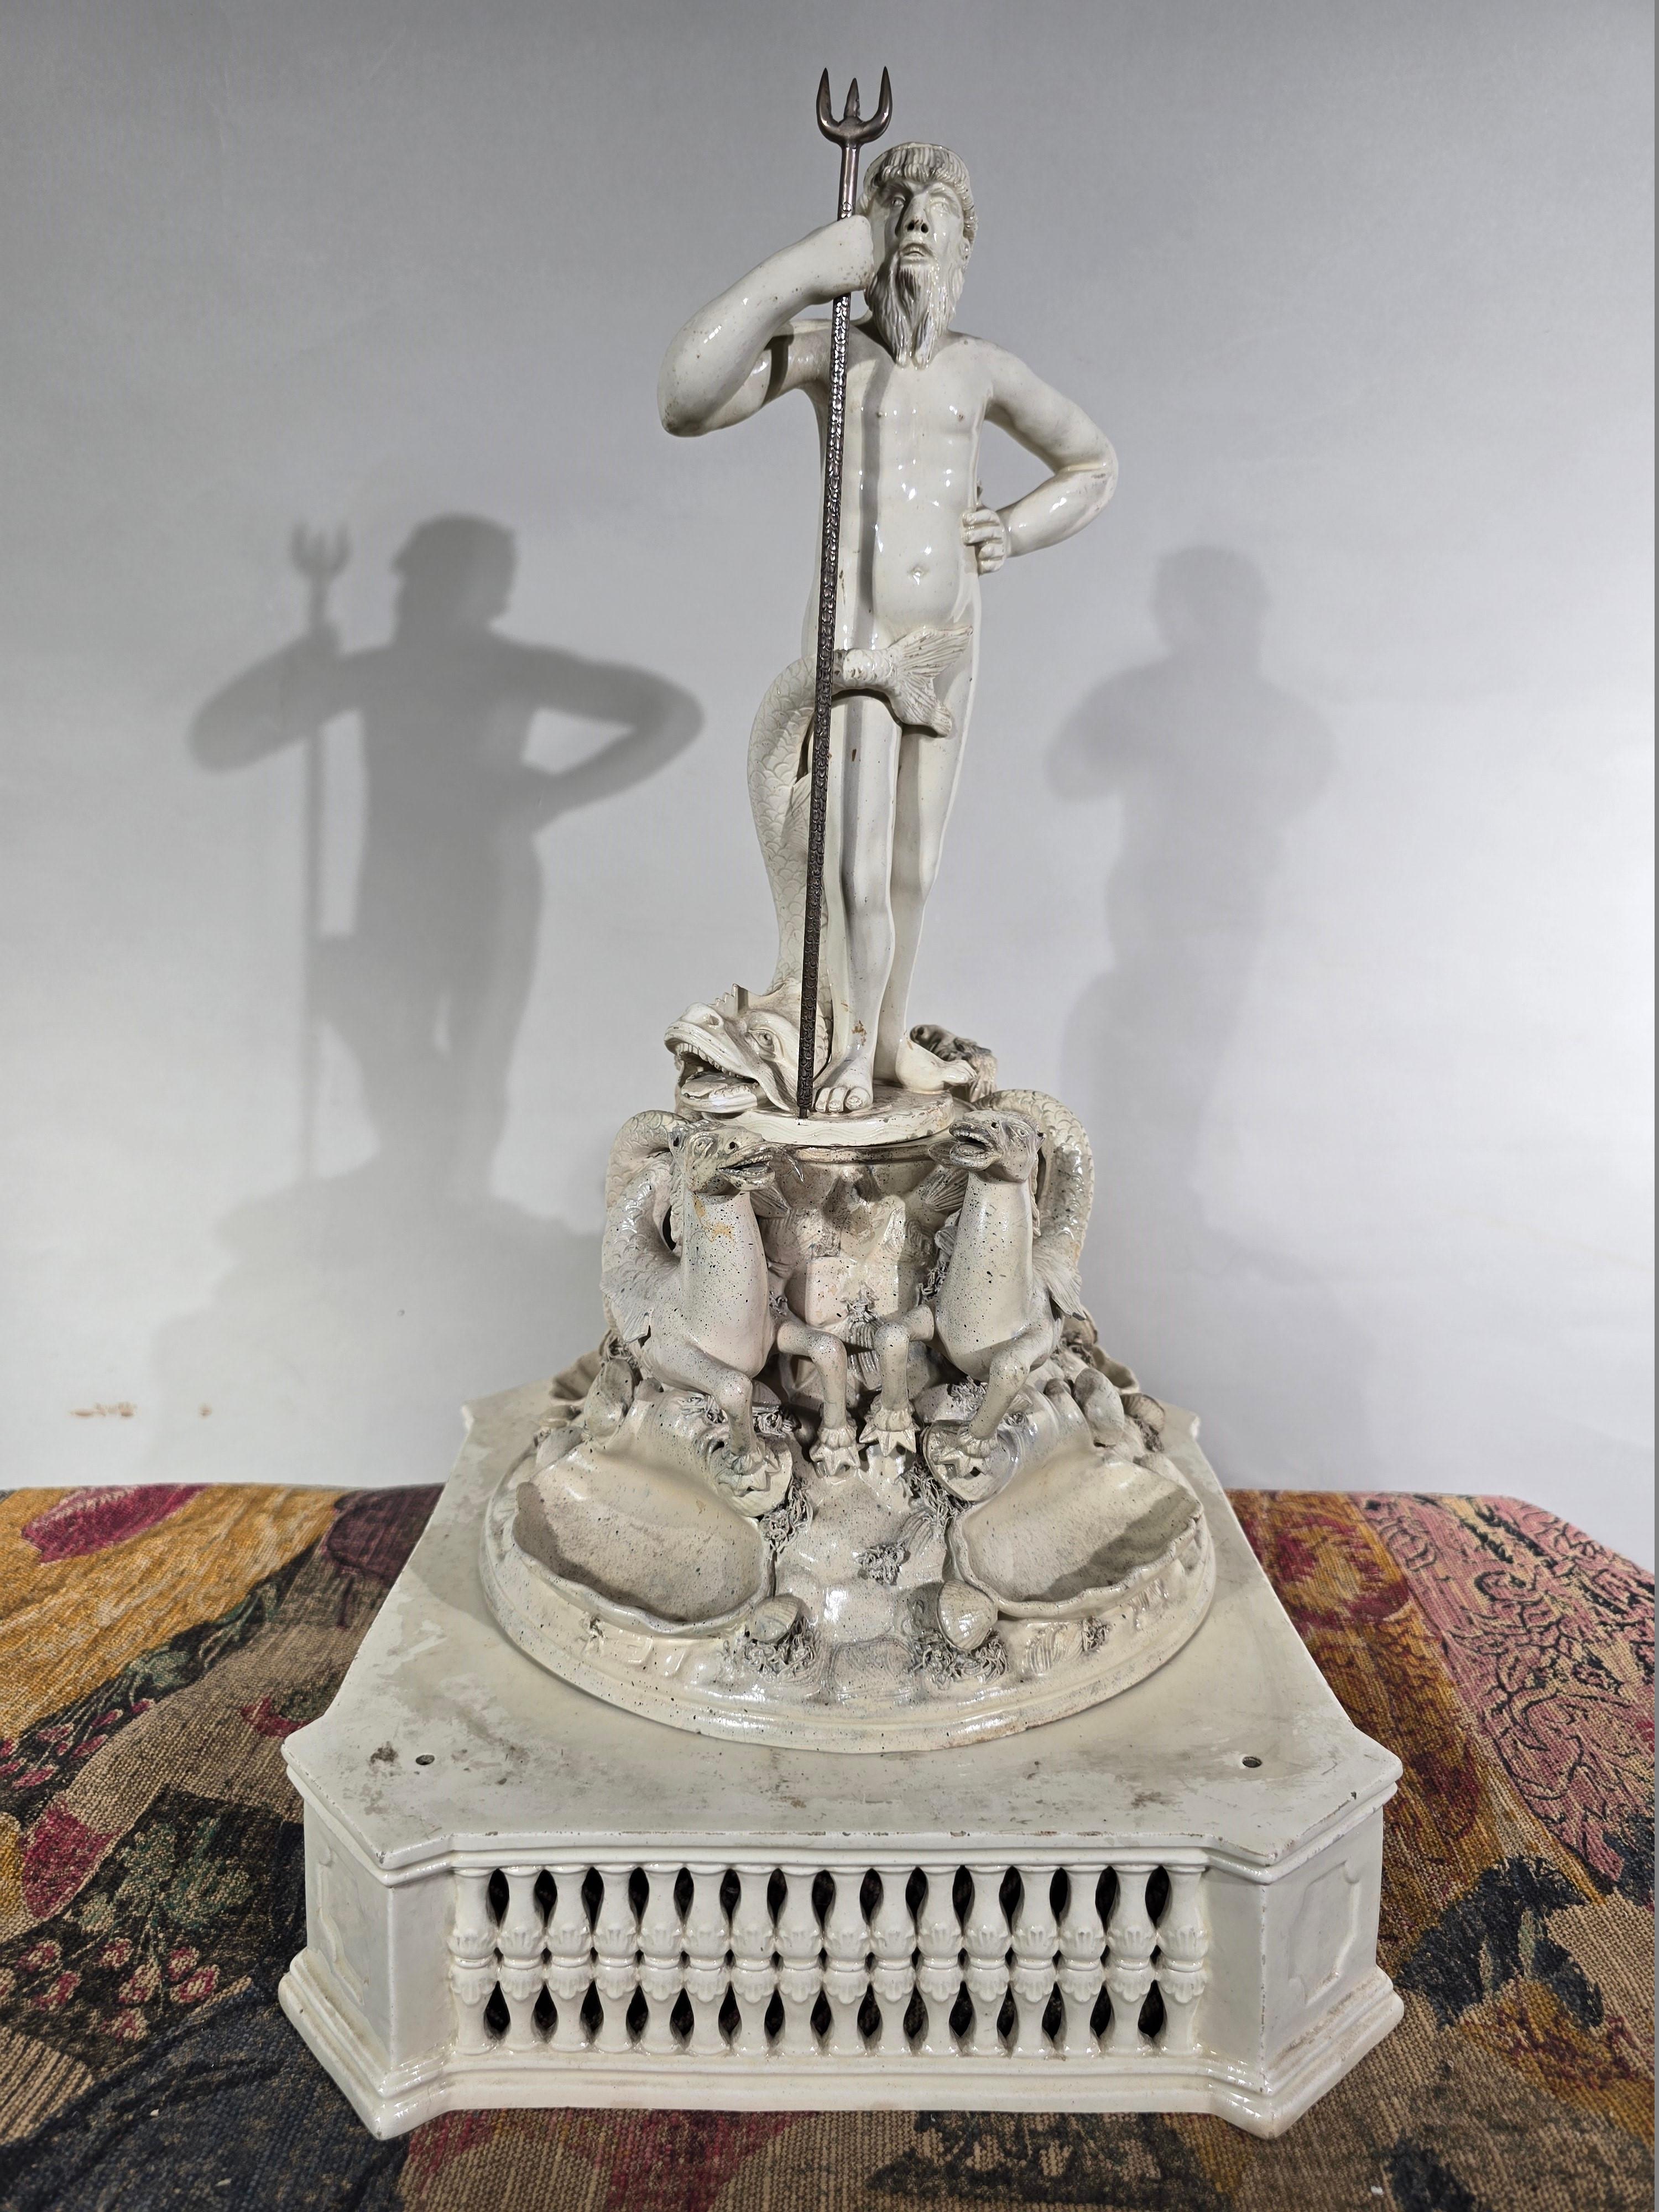 Diese bemerkenswerte Statue des Triumphs des Neptun, die im späten 19. Jahrhundert aus italienischer Keramik gefertigt wurde, stellt die Größe und Macht des Meeresgottes dar. In dieser Darstellung steht Neptun aufrecht und hält seinen Dreizack fest